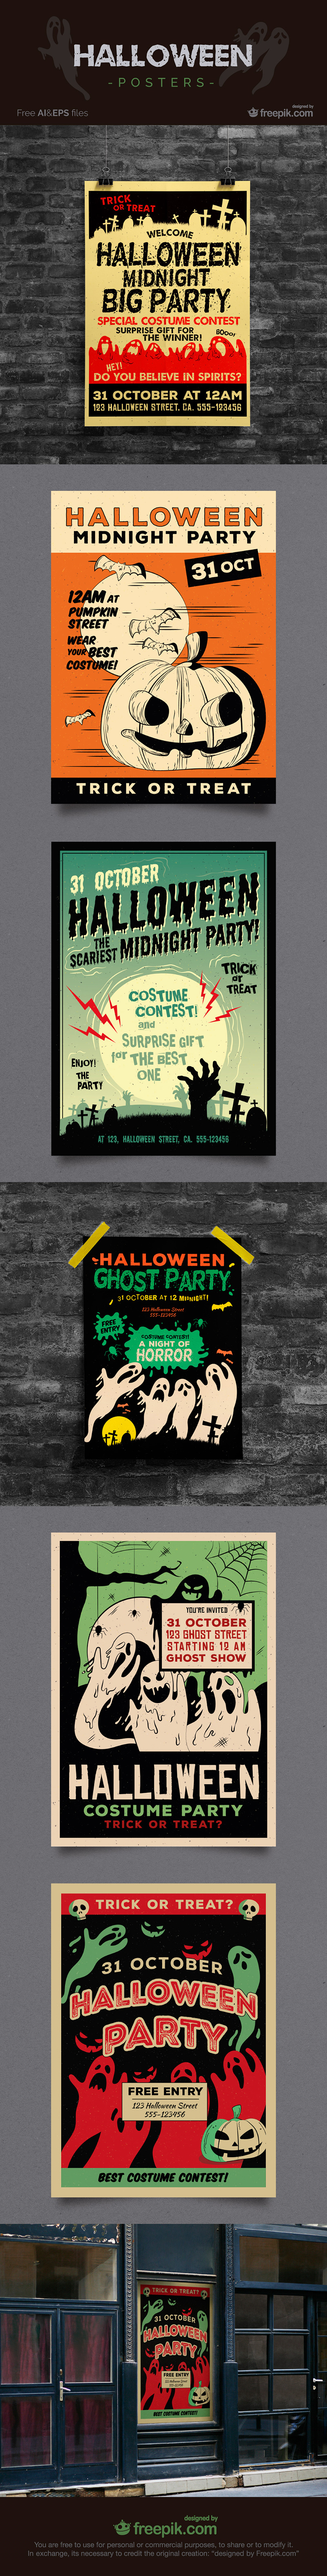 Spooky Halloween Poster Designs